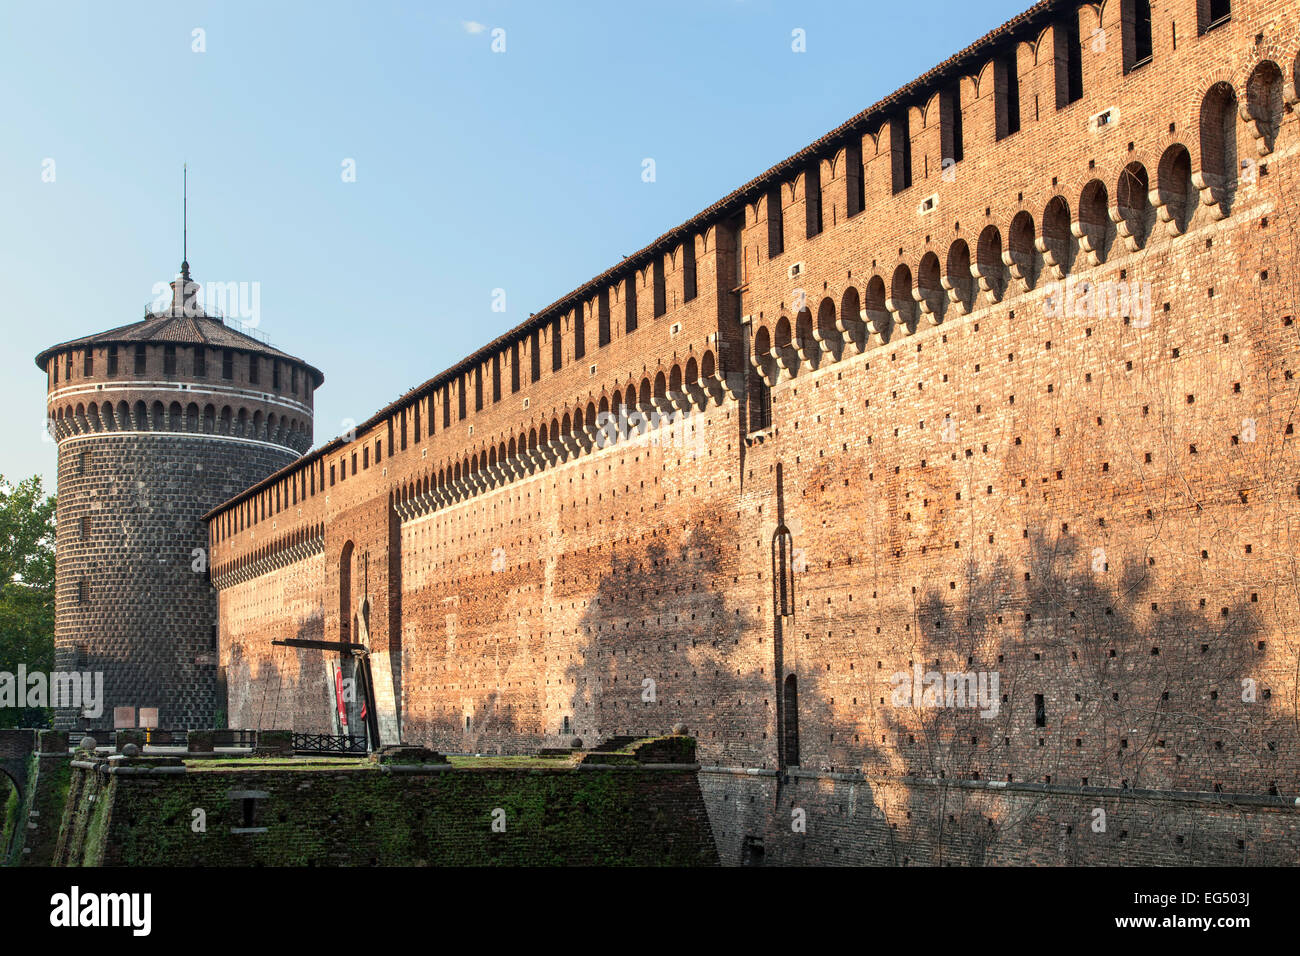 La torre e la parete, Castello Sforzesco di Milano, Italia Foto Stock